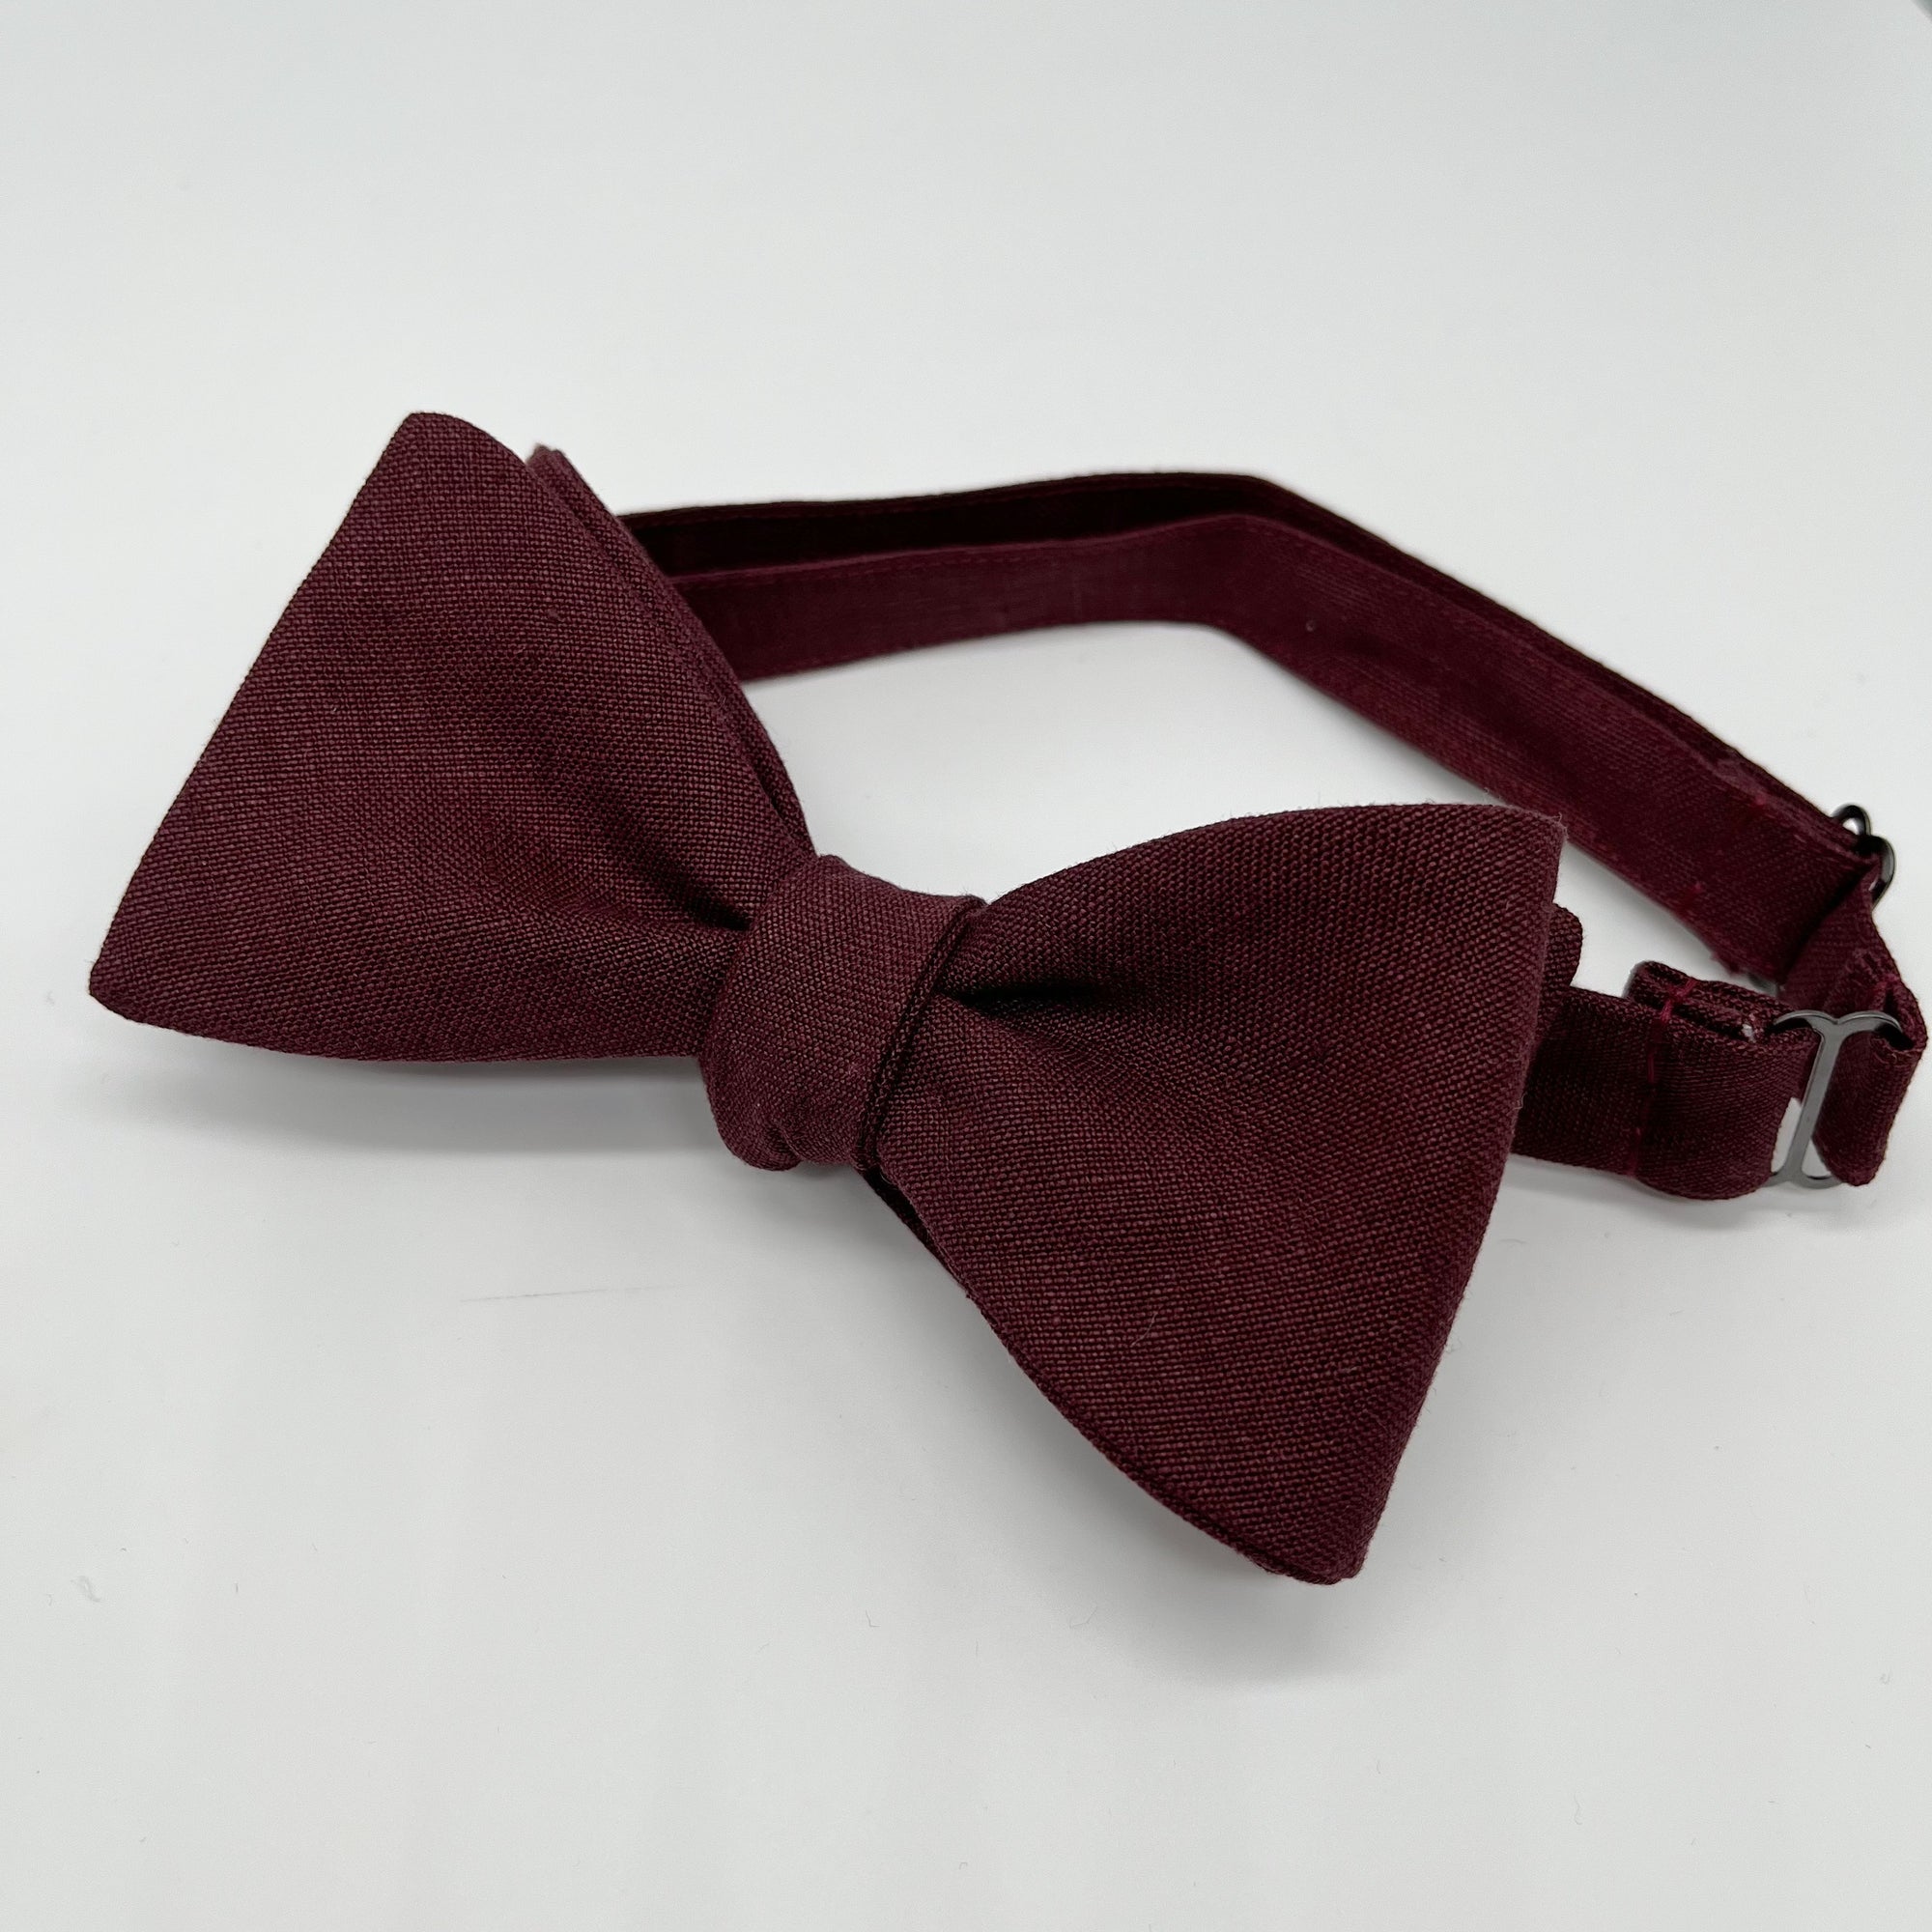 Self-Tie Bow Tie in Burgundy Irish Linen